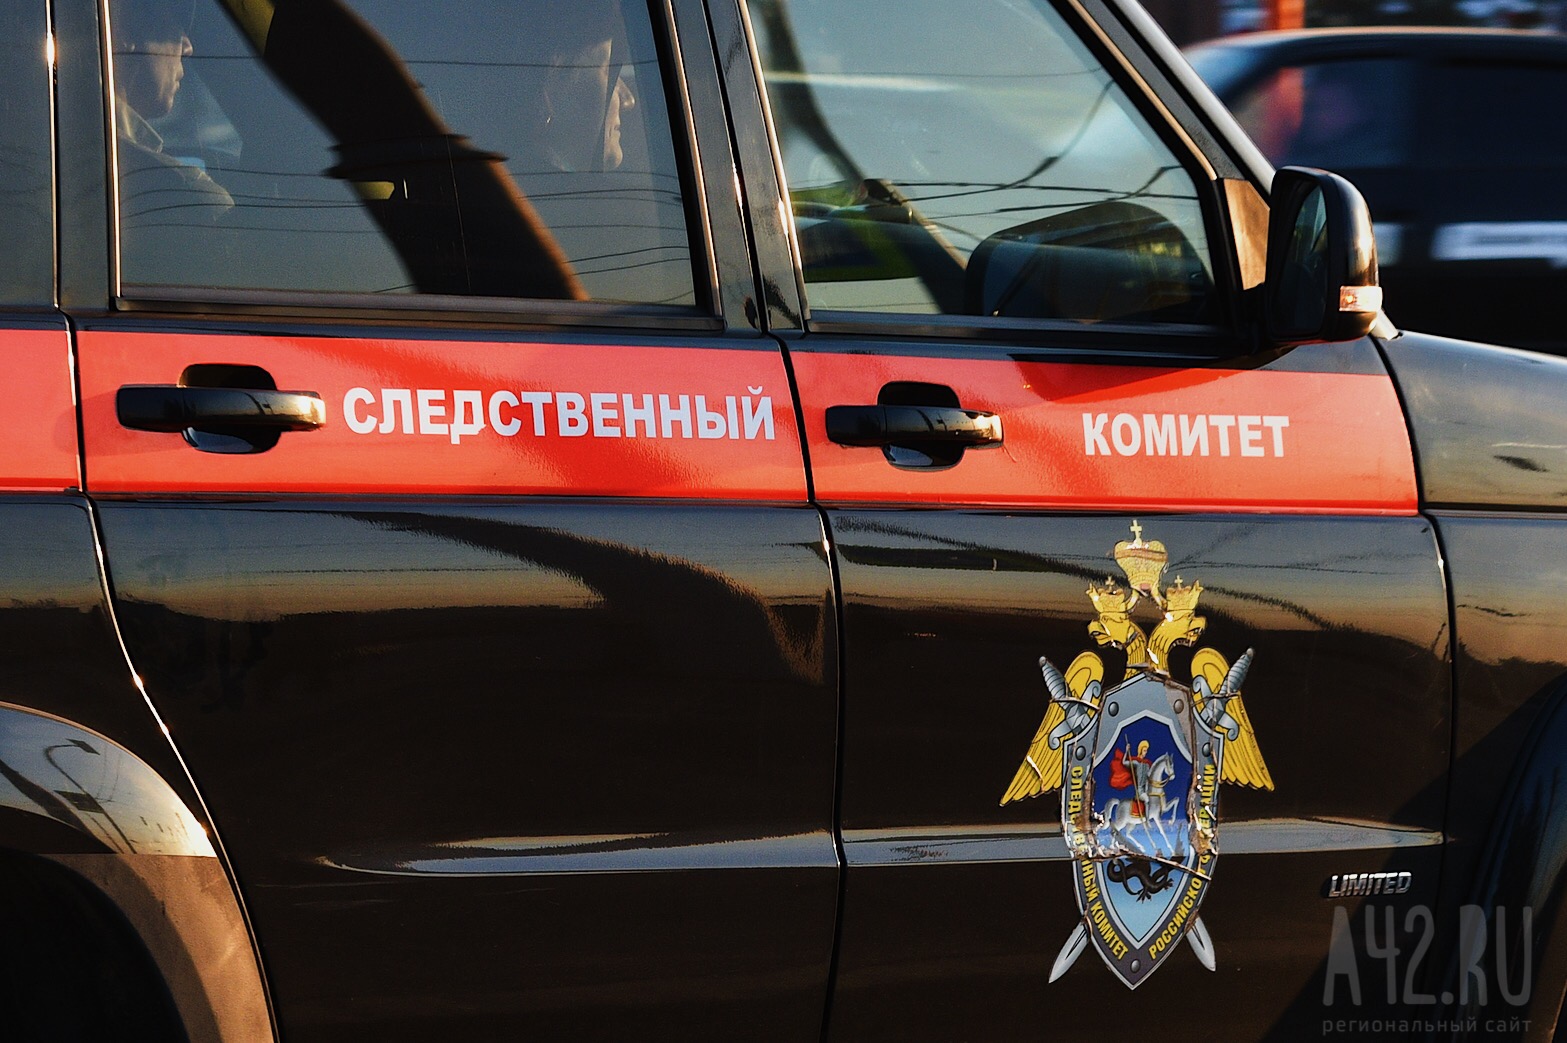 Из бюджета Новокузнецка пропали 9 млн рублей из-за халатности чиновницы